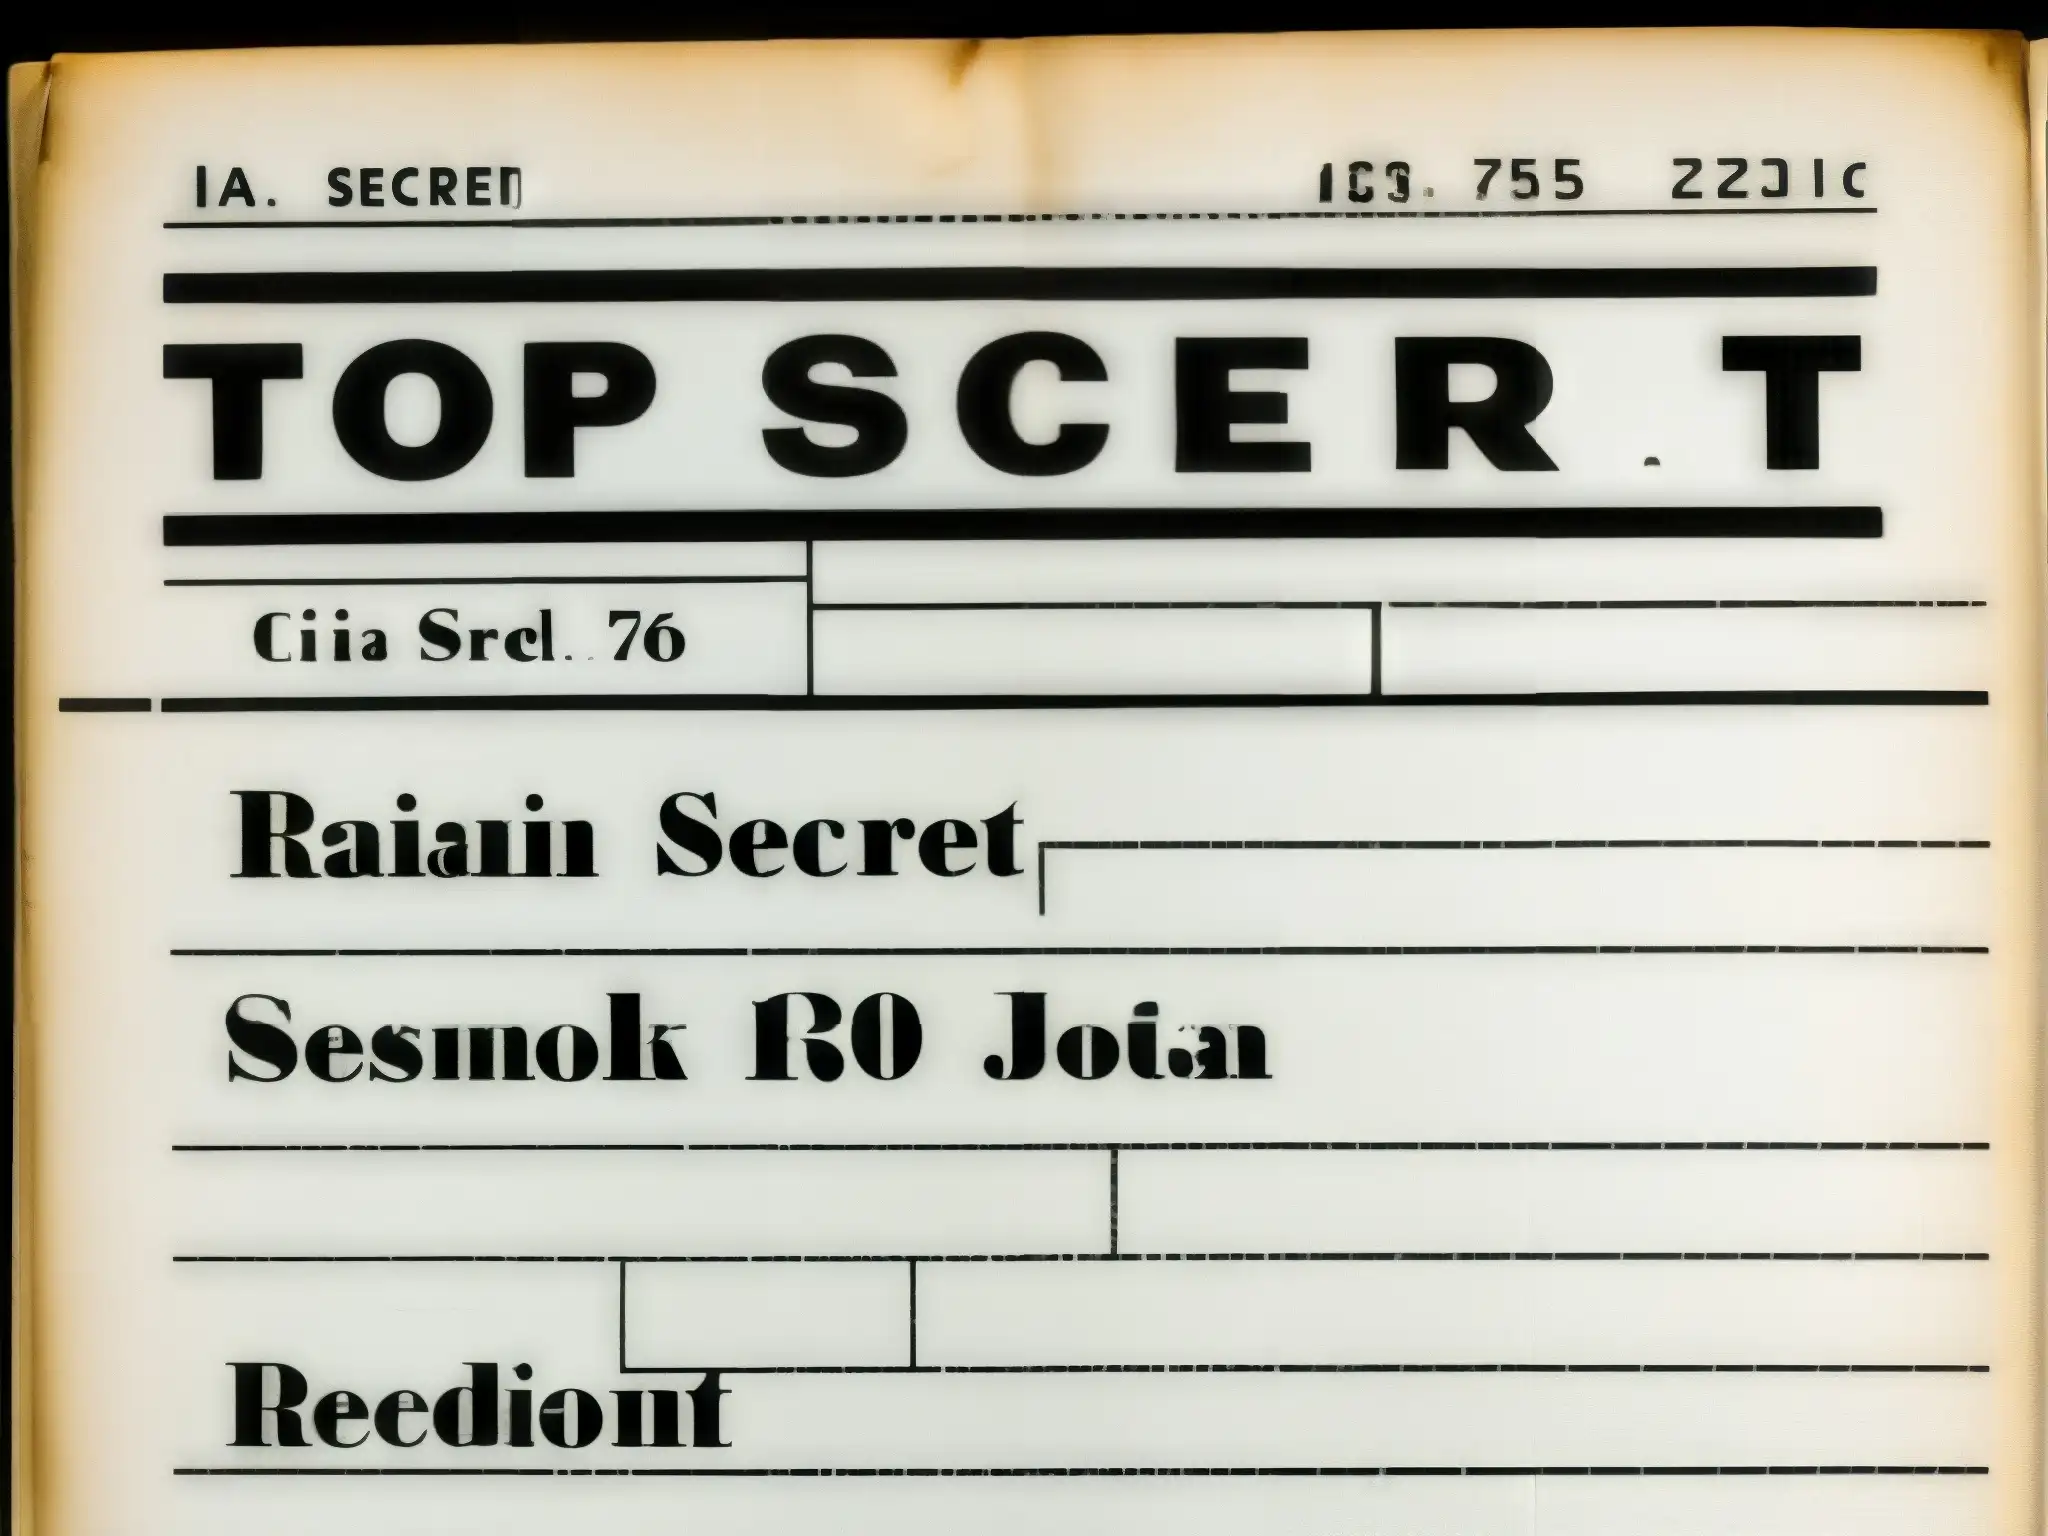 Imagen de archivo desclasificado de fenómenos paranormales de la CIA, en blanco y negro, con sellos de 'Top Secret' y efecto de sombra misteriosa